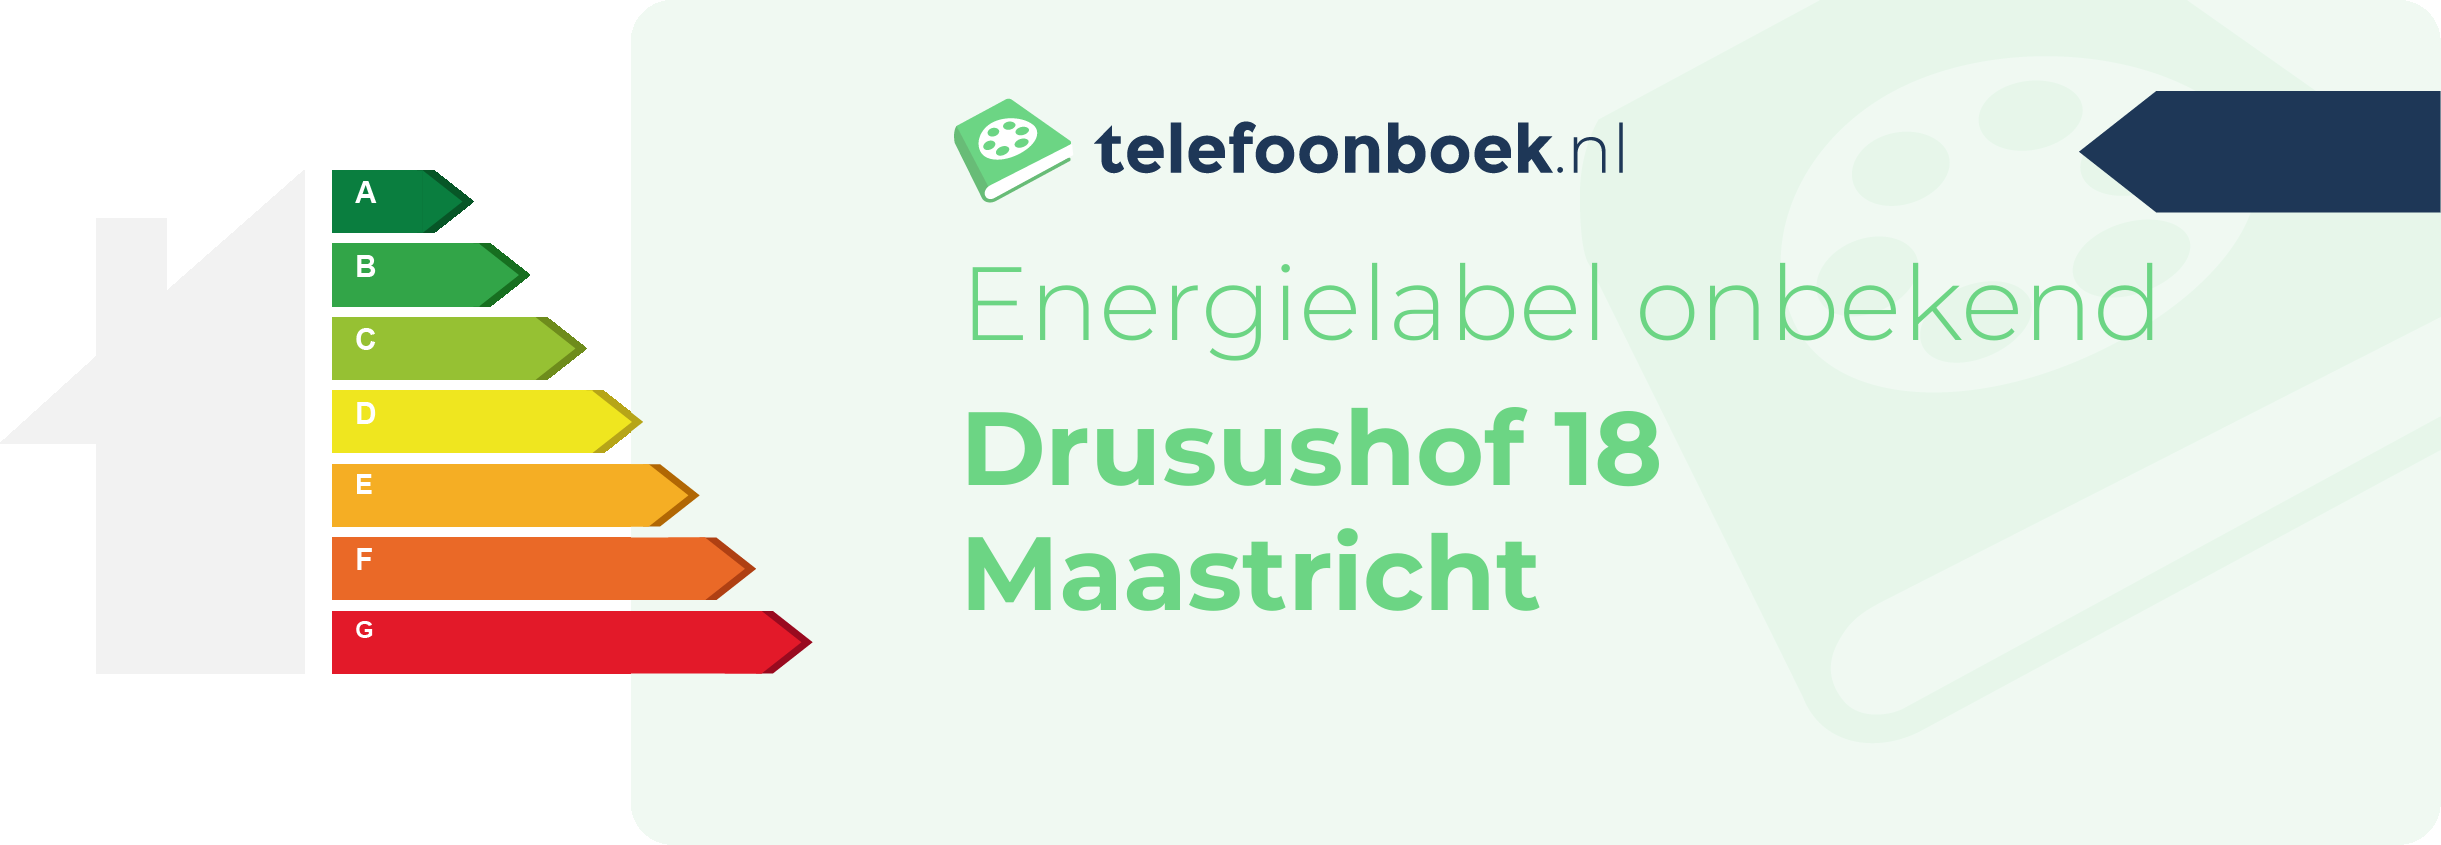 Energielabel Drusushof 18 Maastricht